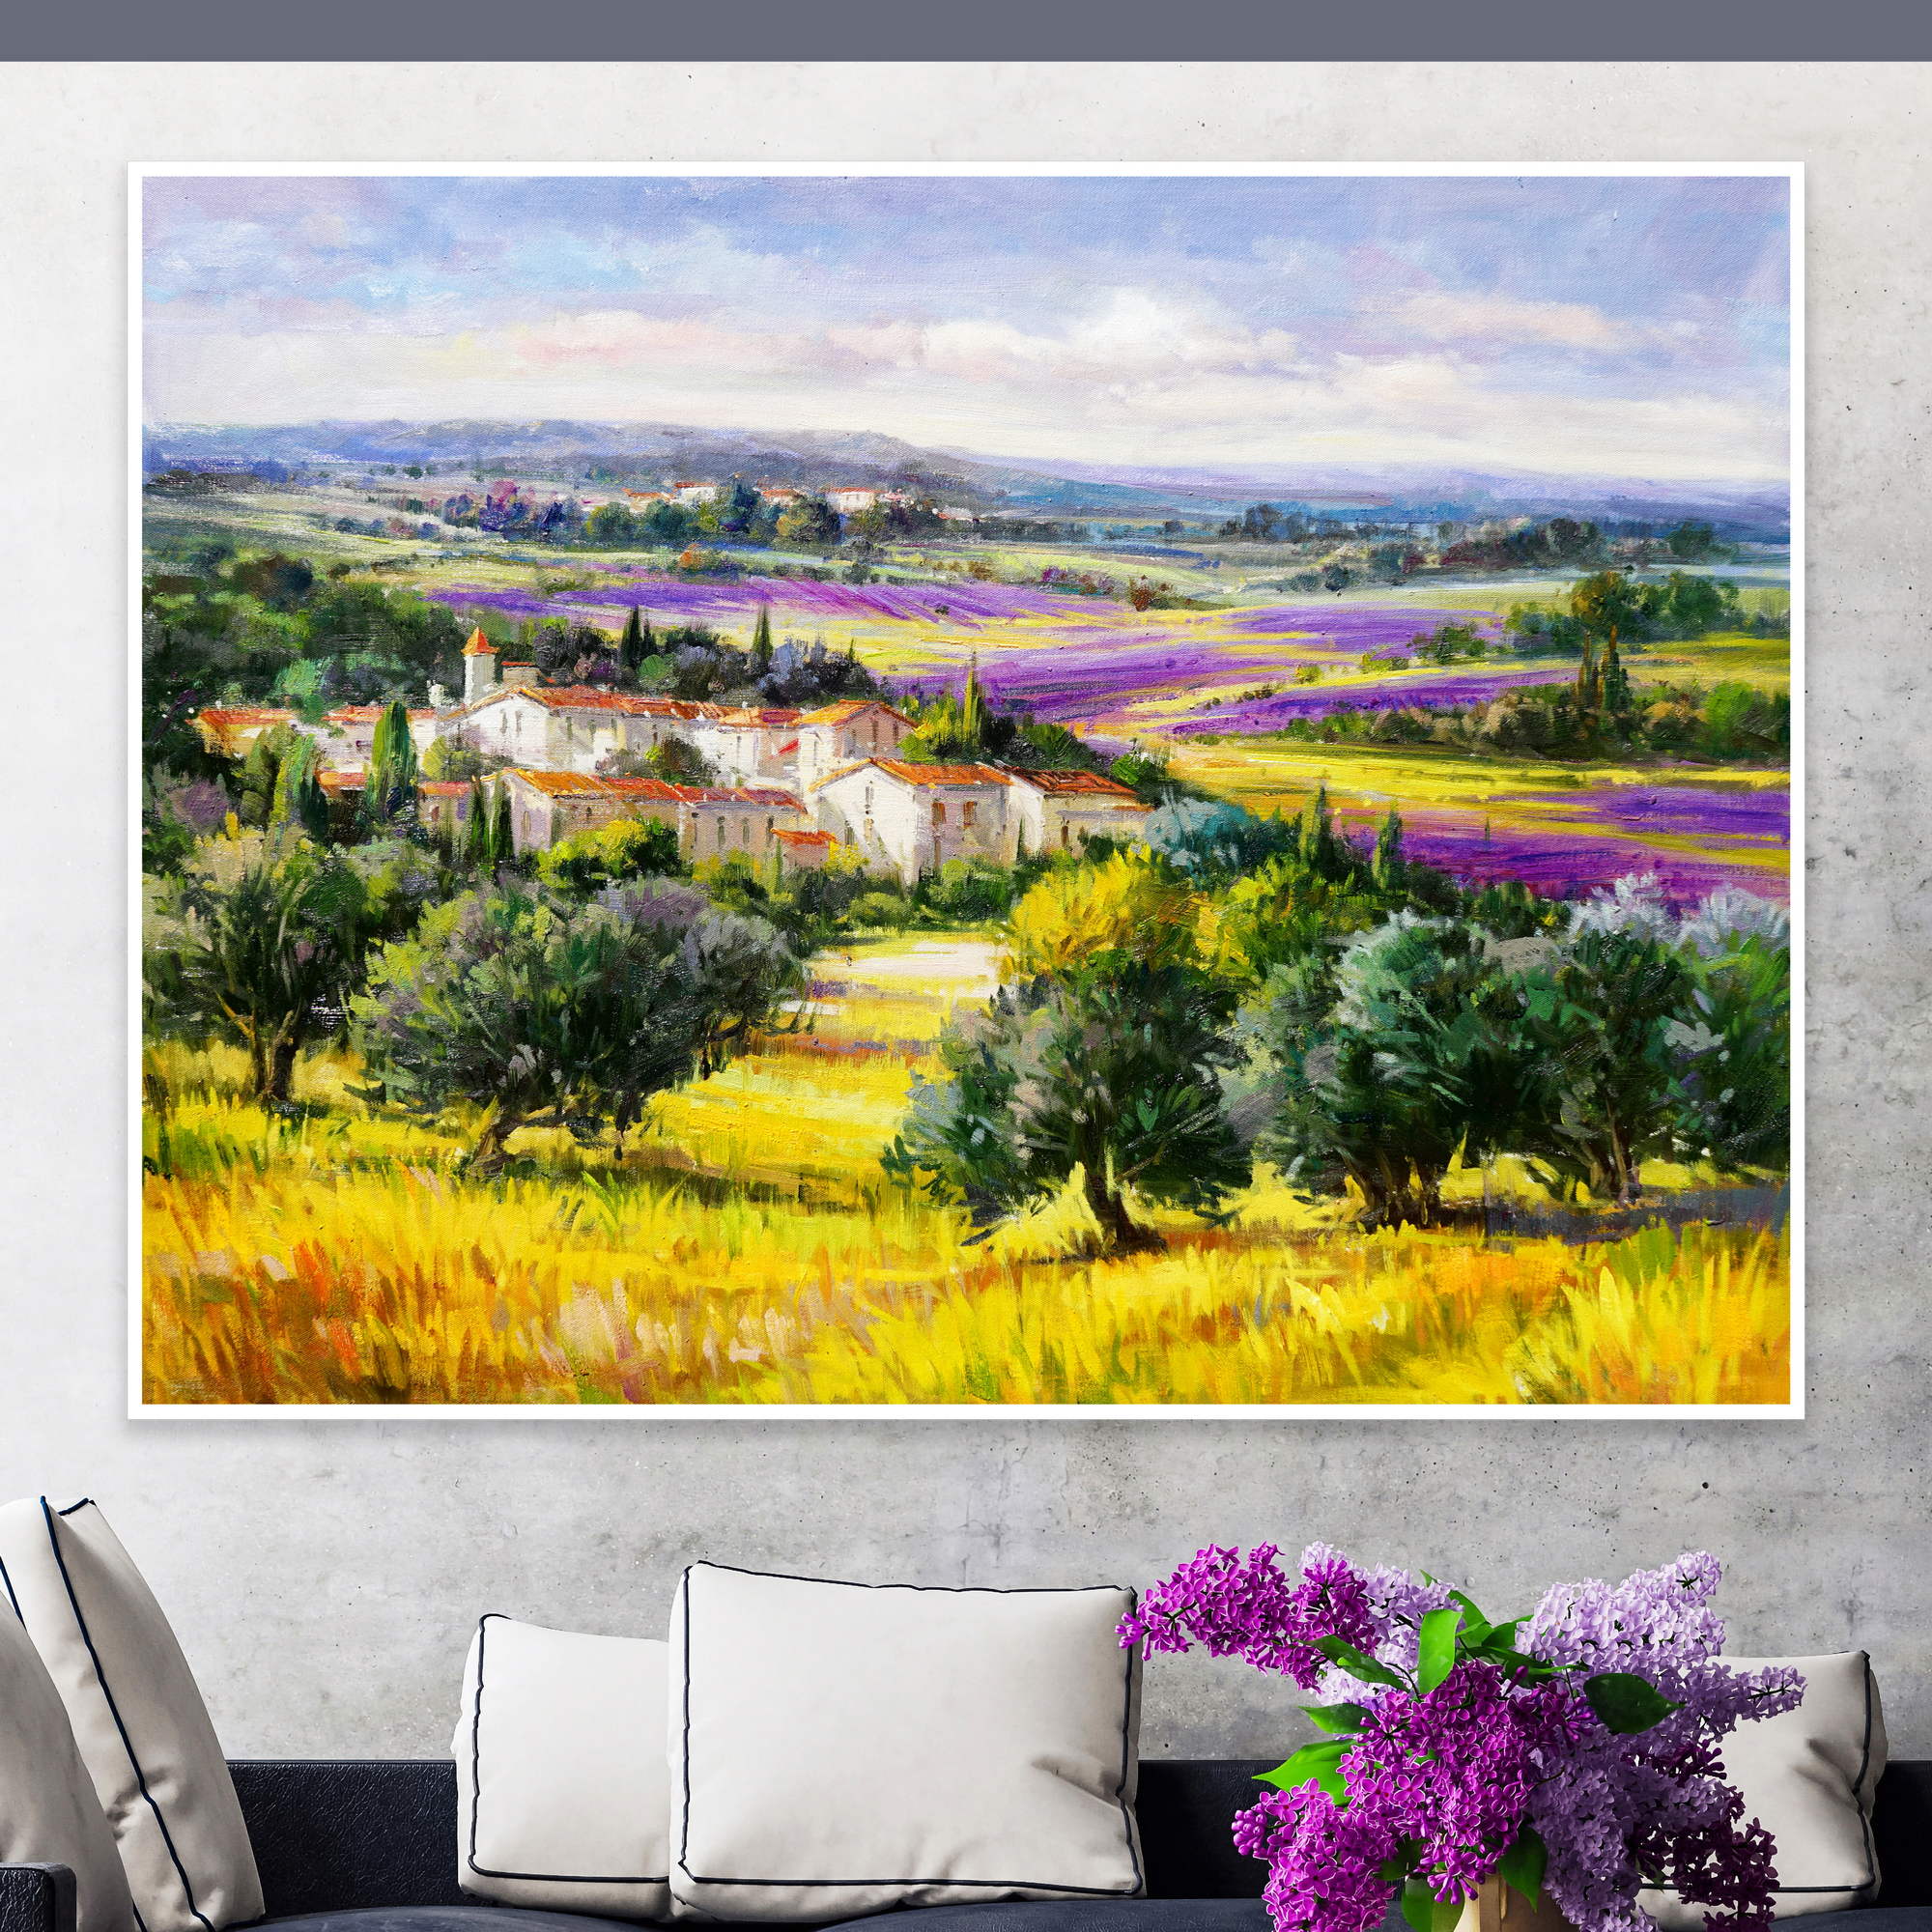 Dipinto con campi di lavanda in provenza, casa rurale e cielo nuvoloso